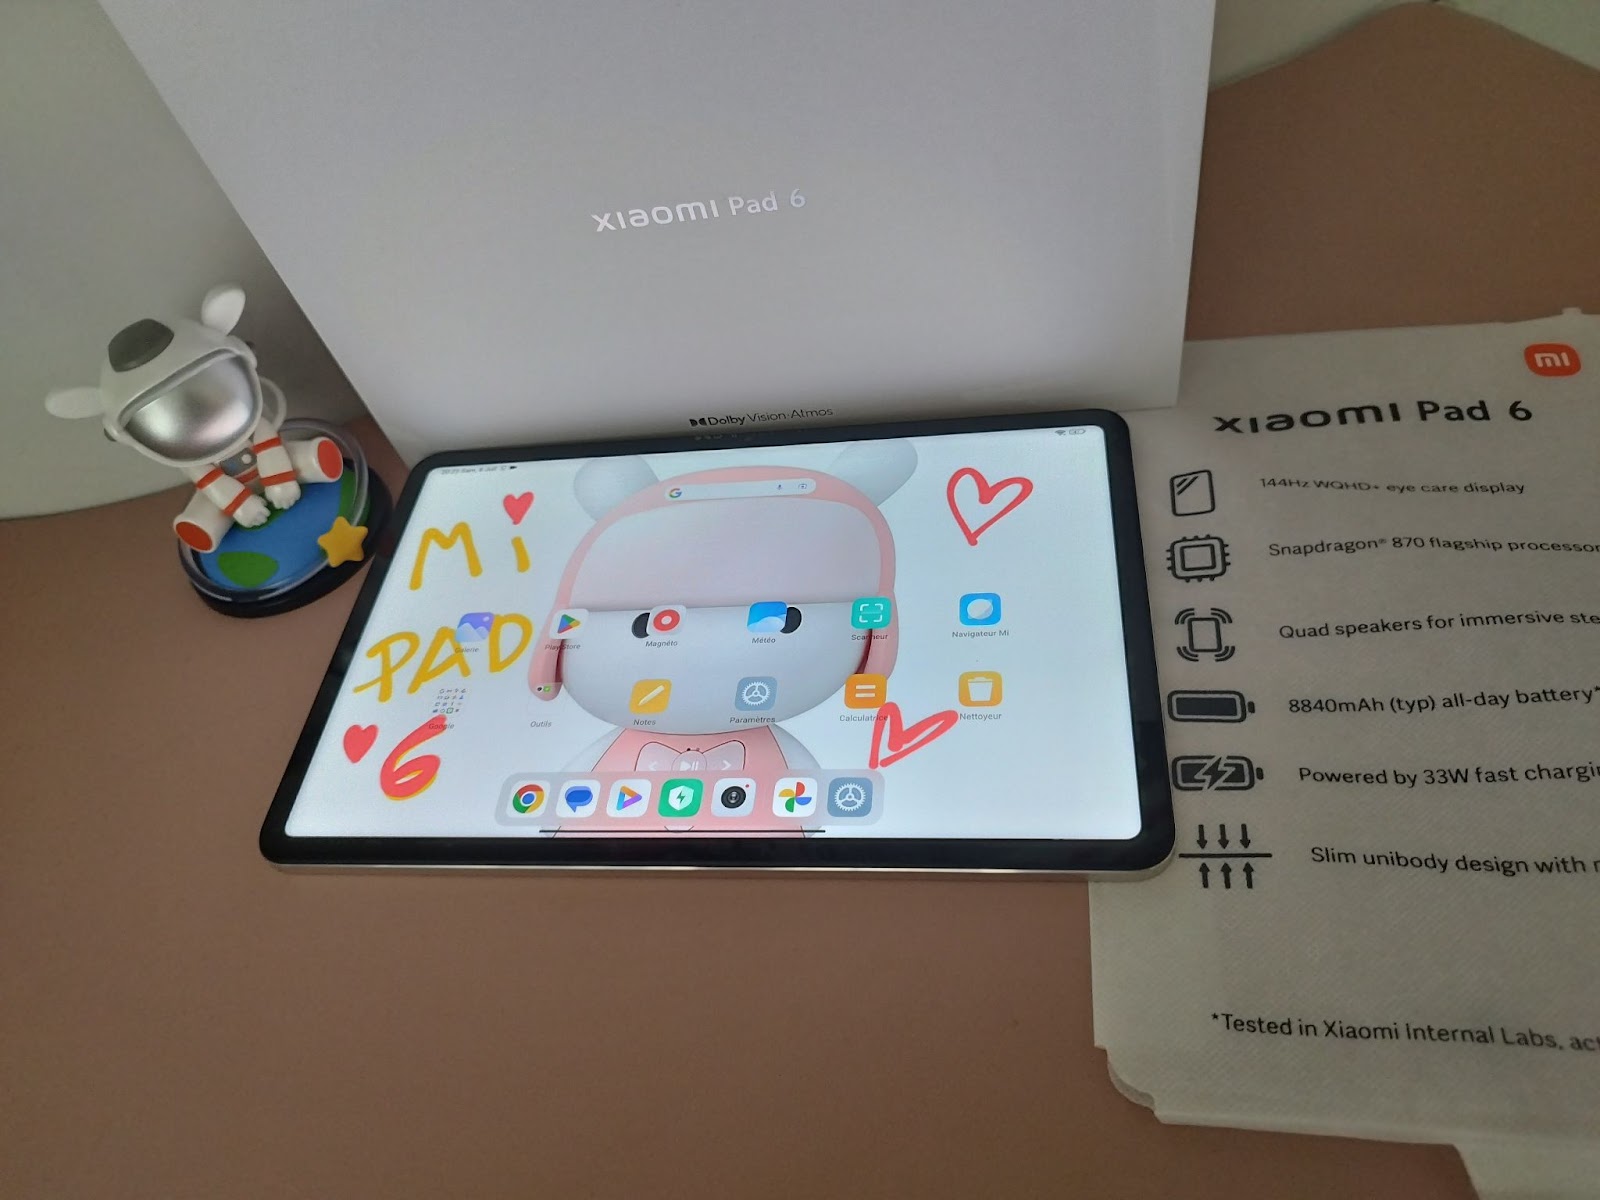 Prise en main de la Xiaomi Pad 6 : une tablette milieu de gamme prometteuse